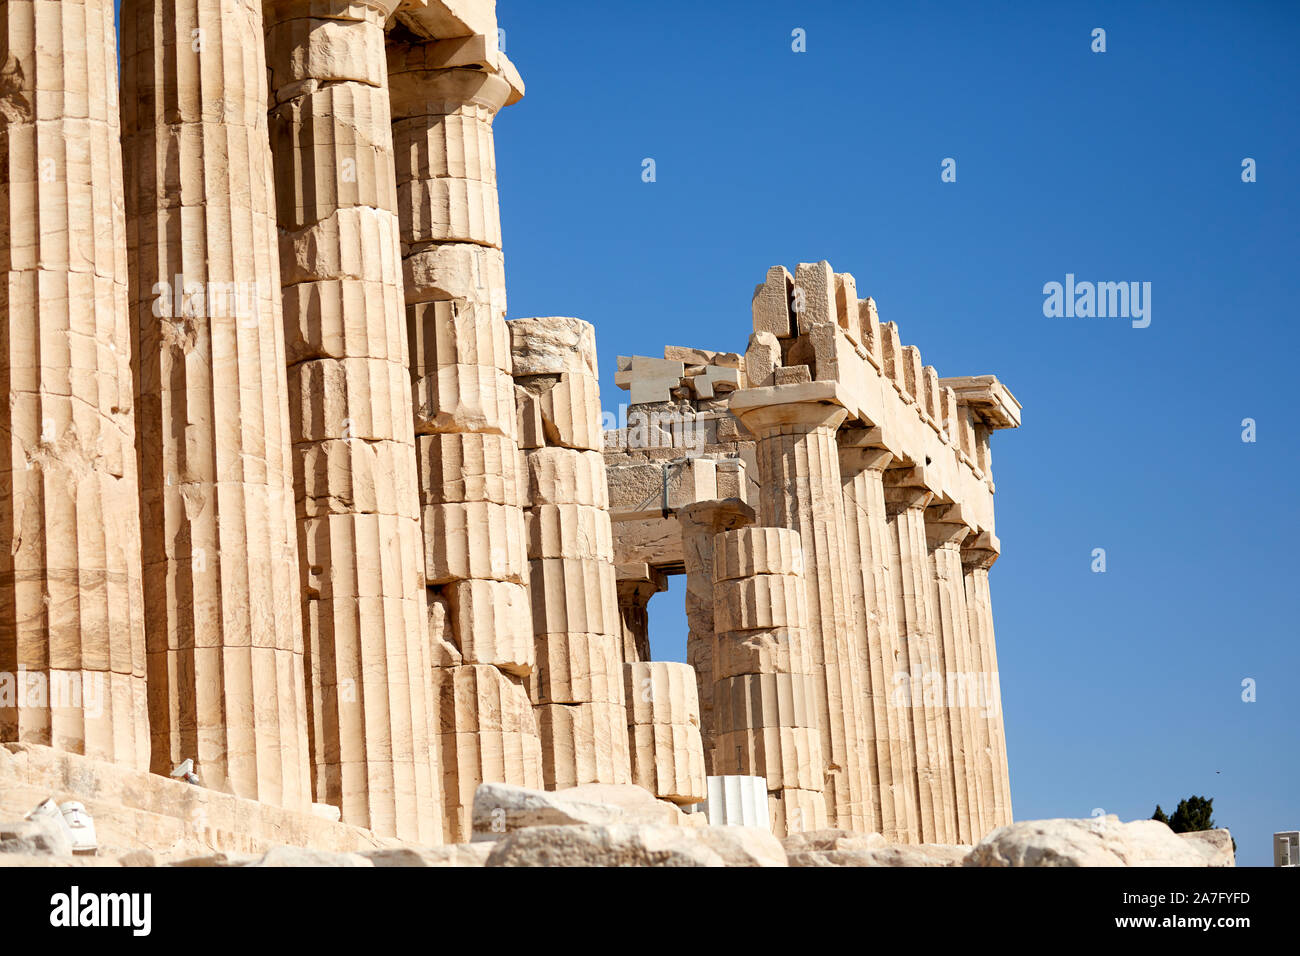 Atene capitale della Grecia del V secolo landmark rovine Tempio Parthenon Acropoli di Atene, situato sulla cima di una collina rocciosa, che domina la città di Atene Foto Stock